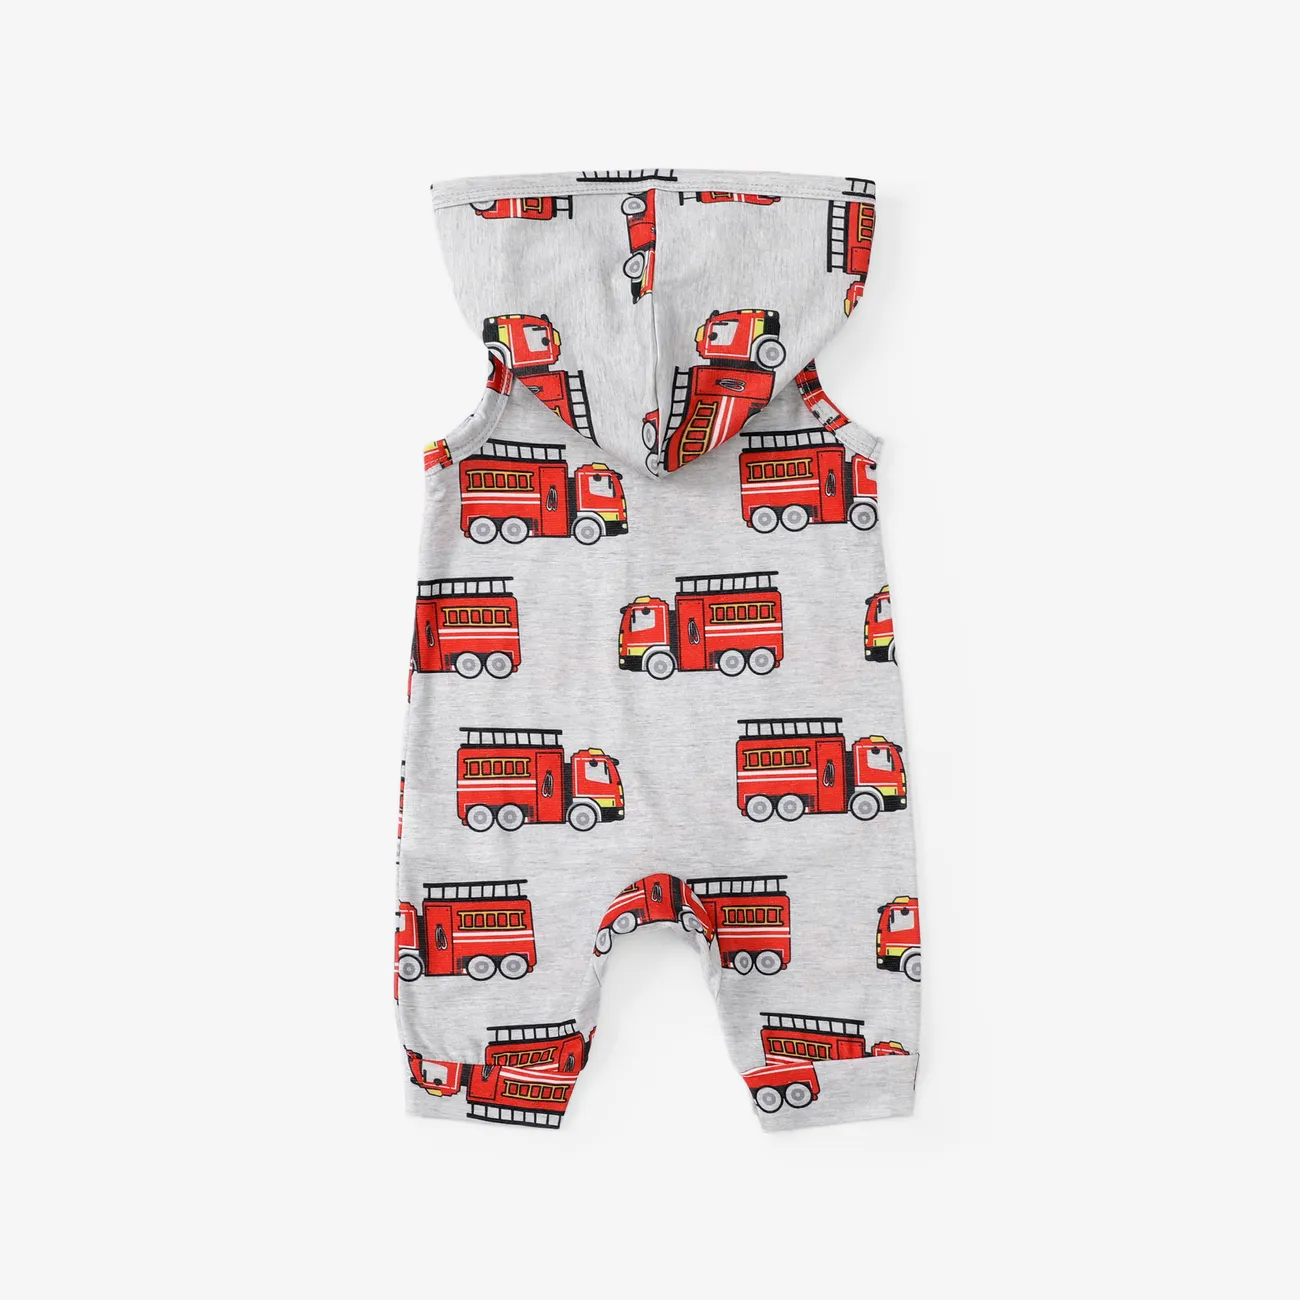 Fahrzeug-gefüttertes Pyjama-Set für Jungen, 1 Stück, verspieltes Design, reguläre Kategorie grau gesprenkelt big image 1